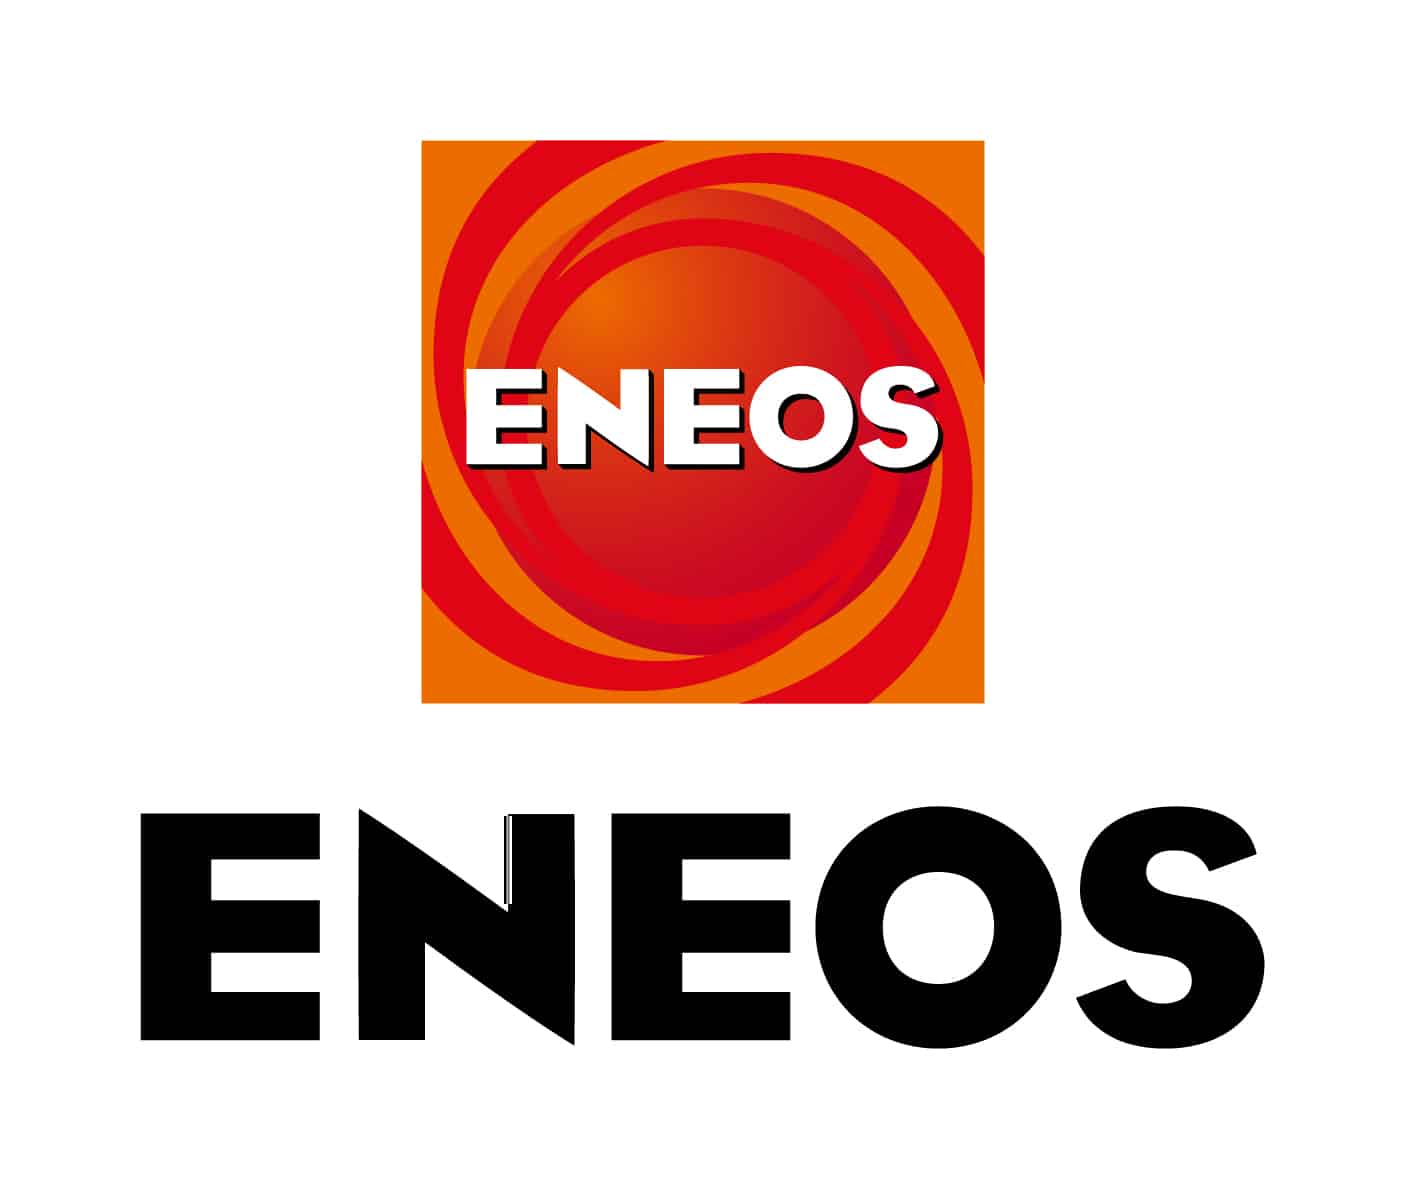 ENEOS Corporation / ENEOS